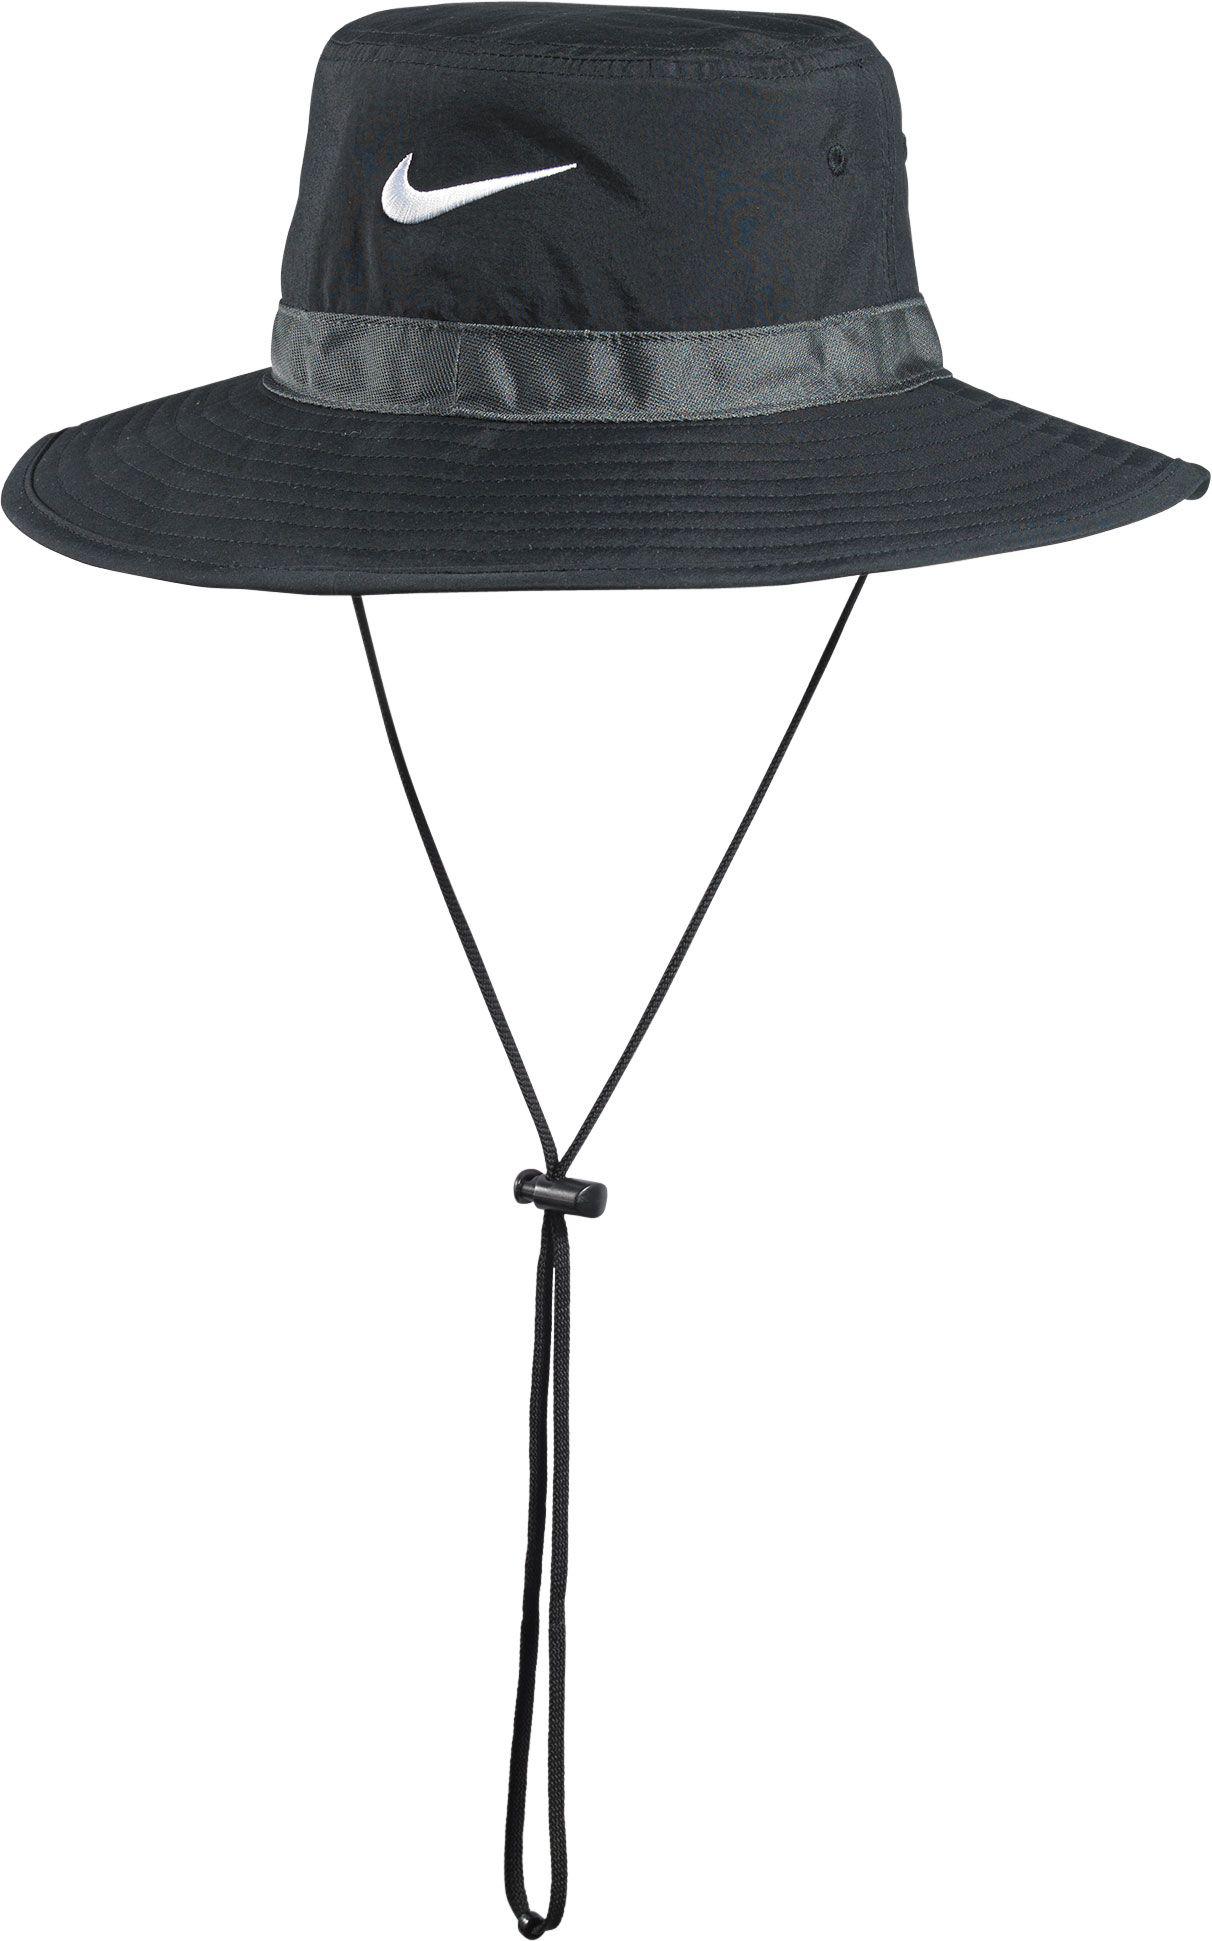 Nike Synthetic Sideline Bucket Hat in Black for Men - Lyst